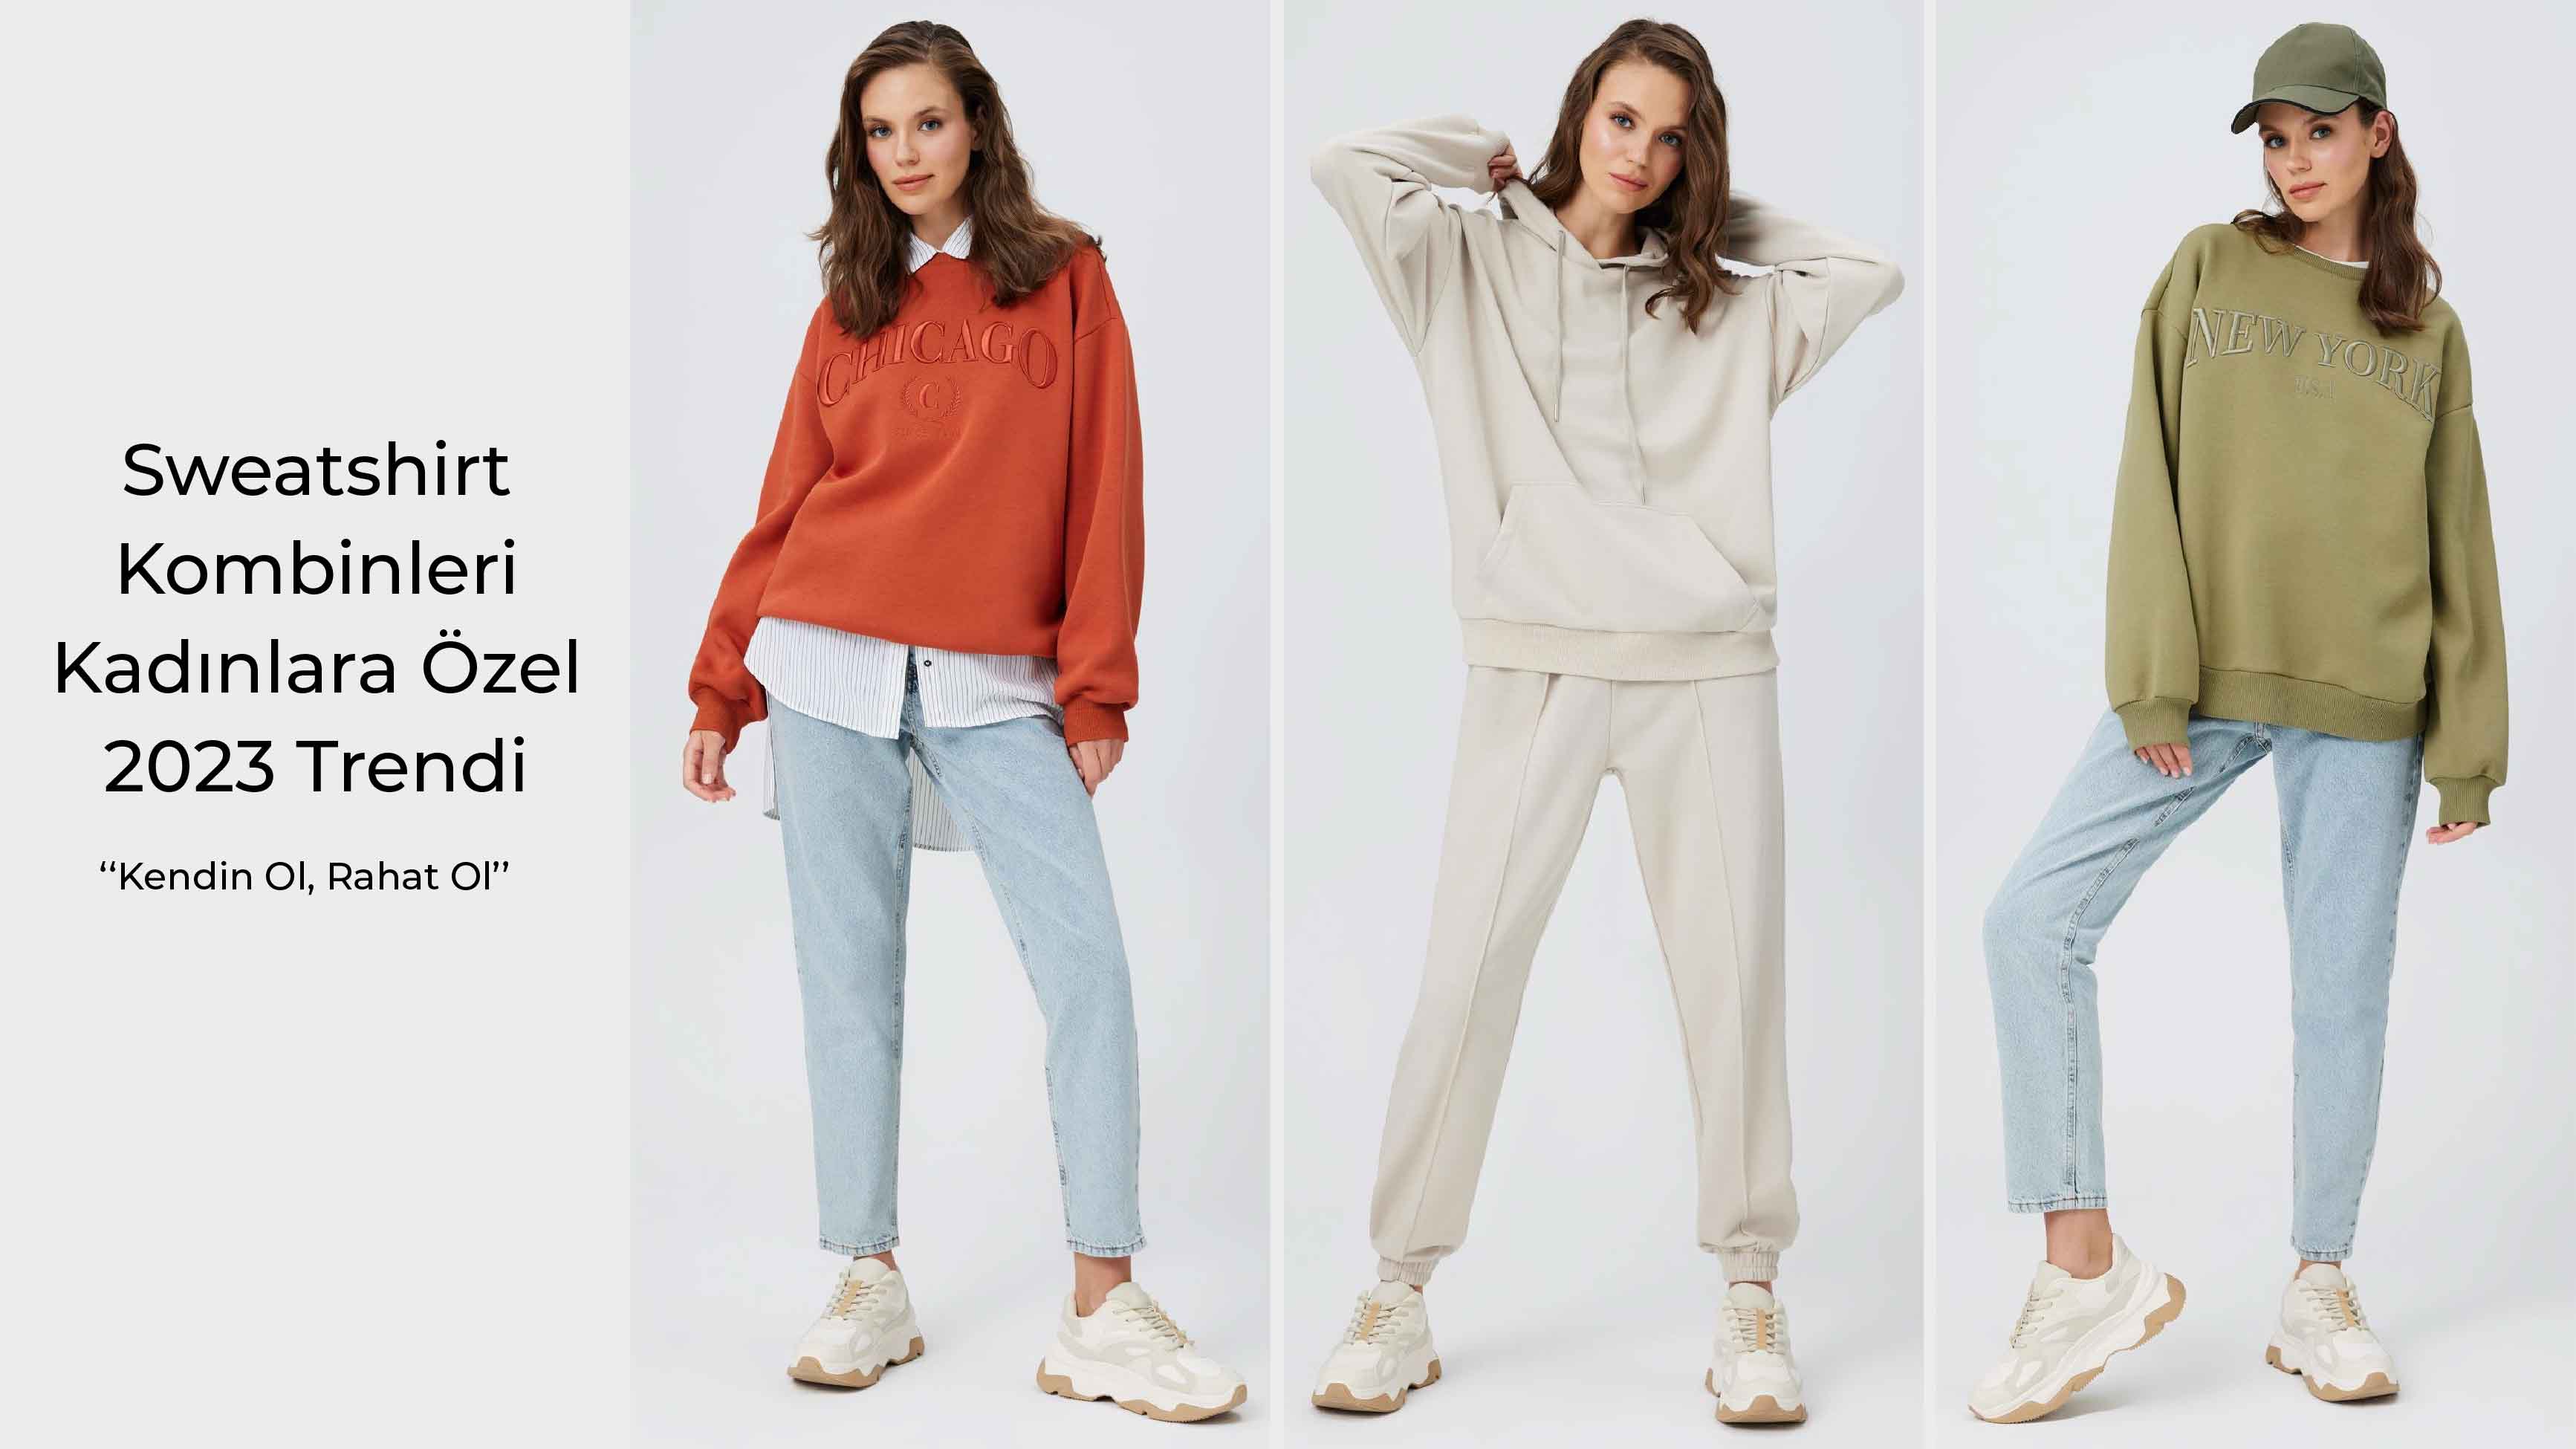 Sweatshirt Kombinleri Kadınlara Özel - 2023 Trendi